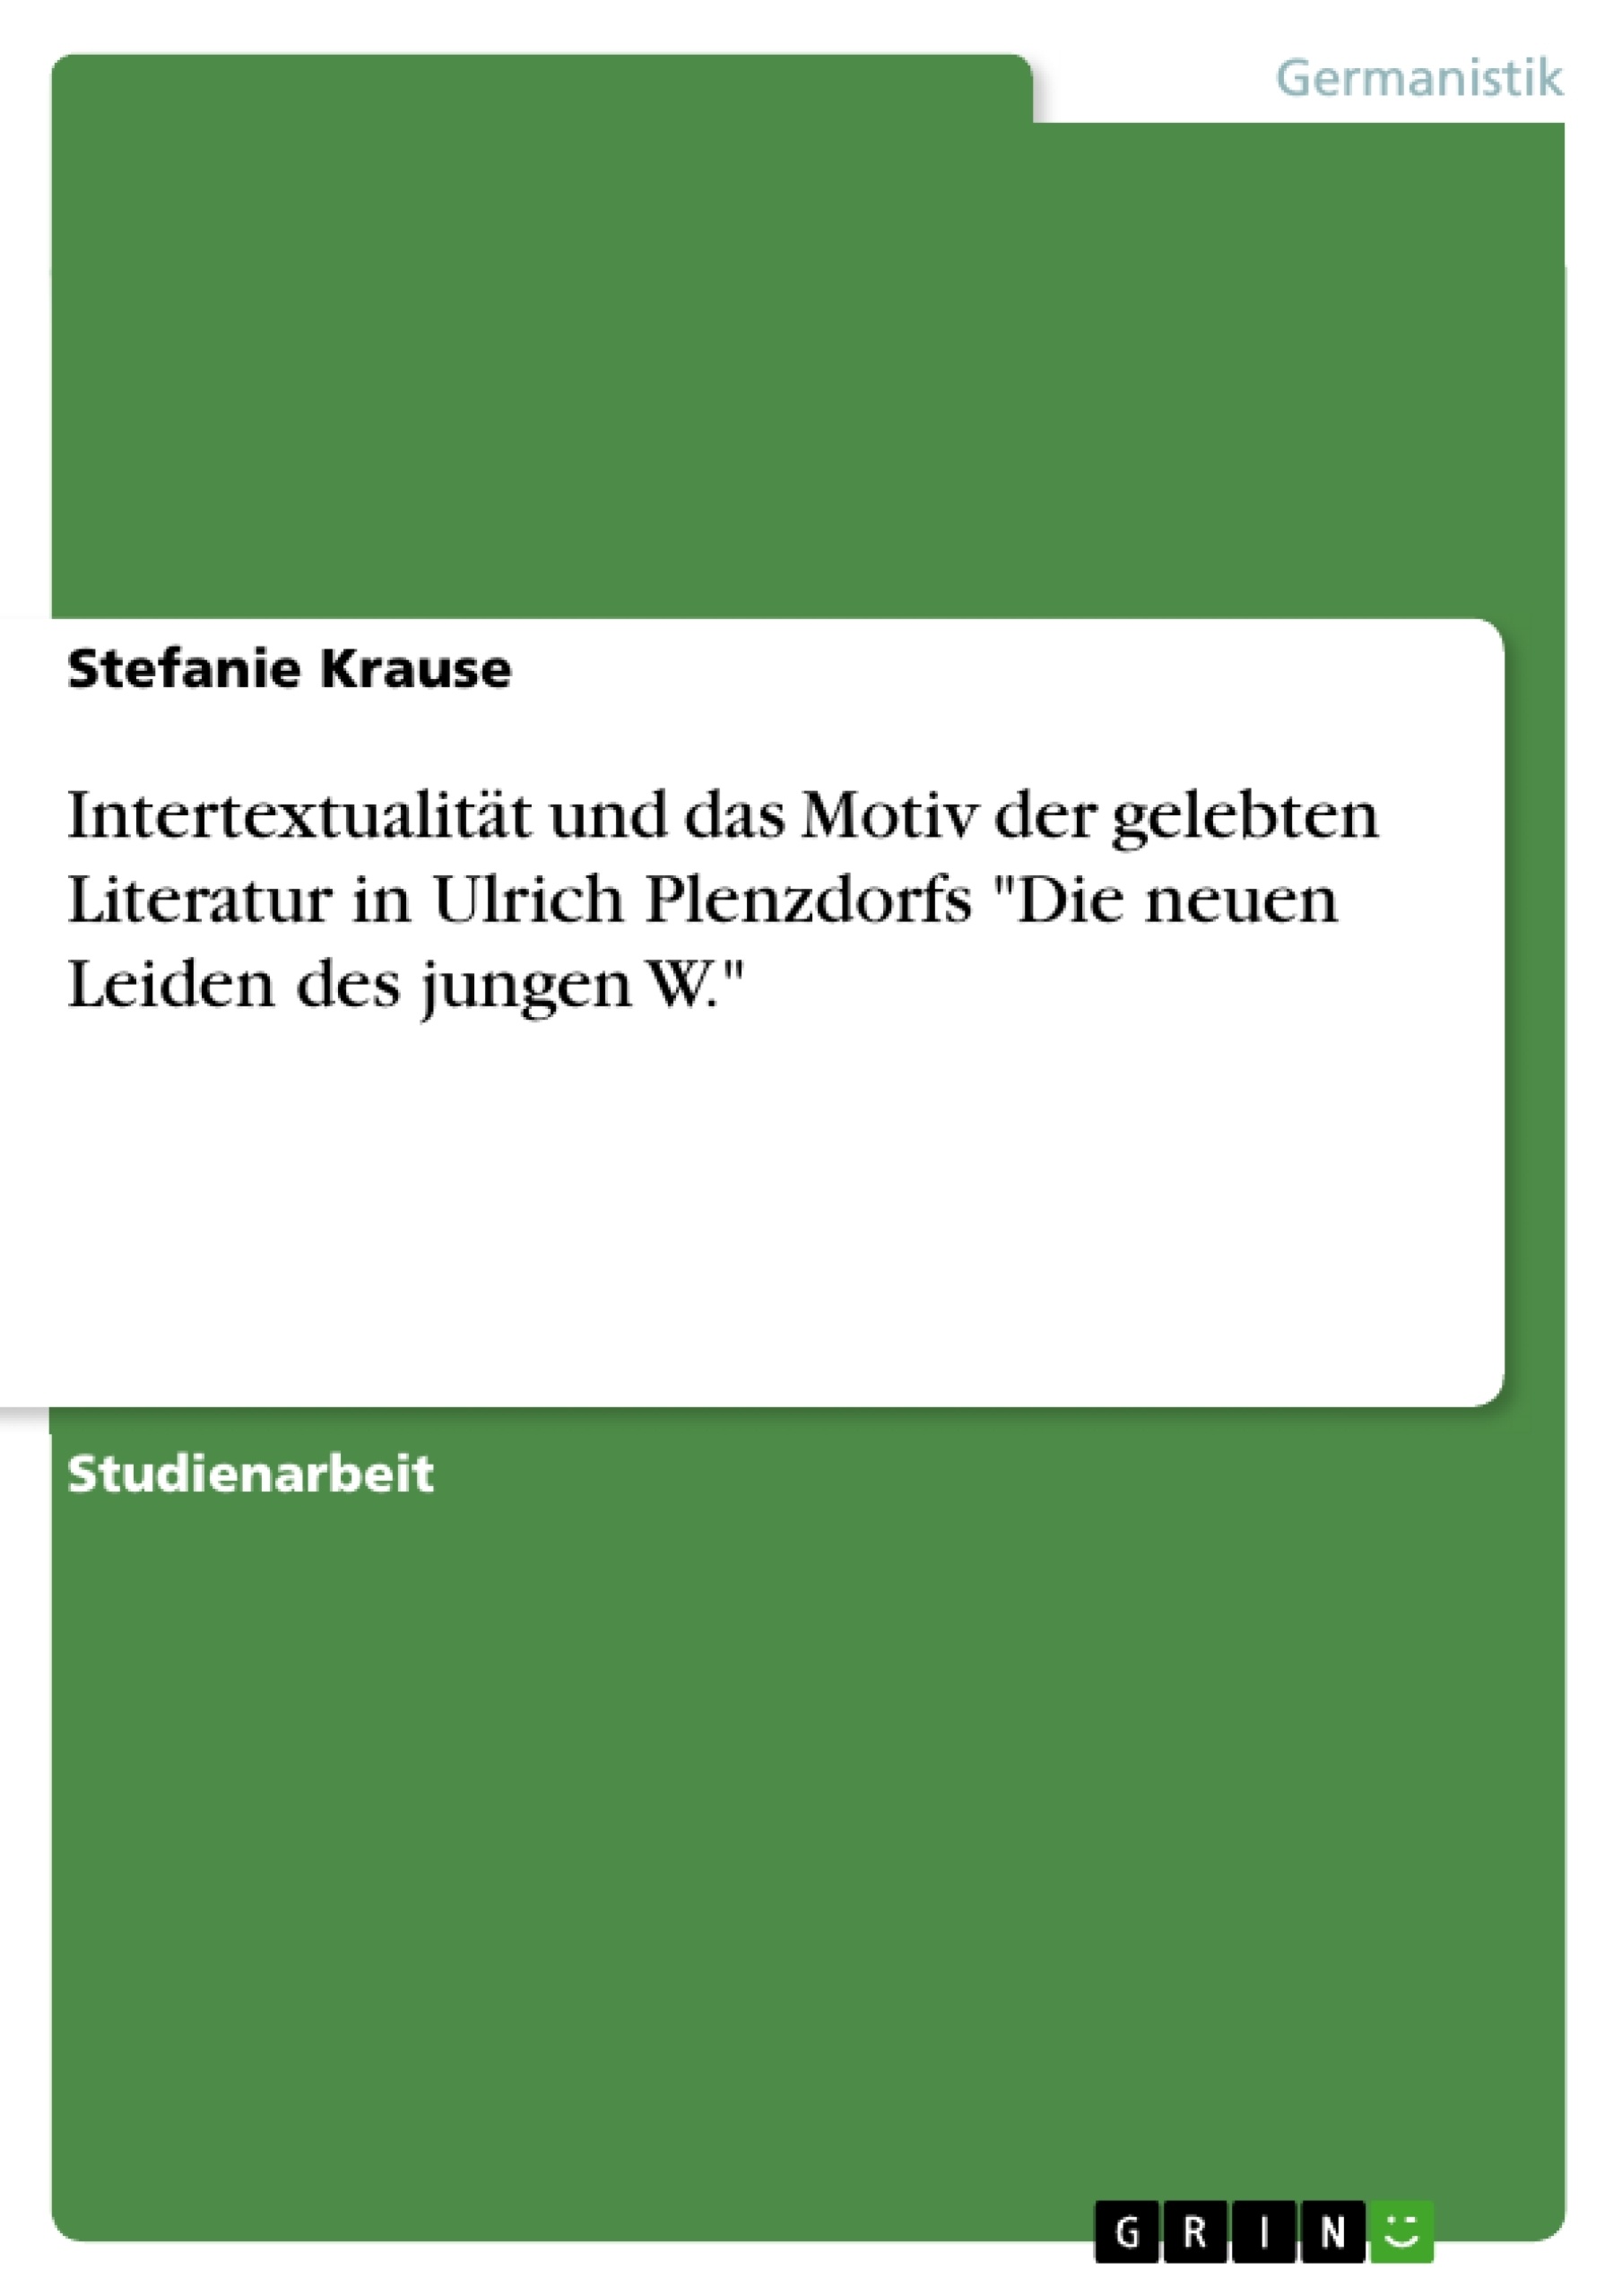 Title: Intertextualität und das Motiv der gelebten Literatur in Ulrich Plenzdorfs "Die neuen Leiden des jungen W."